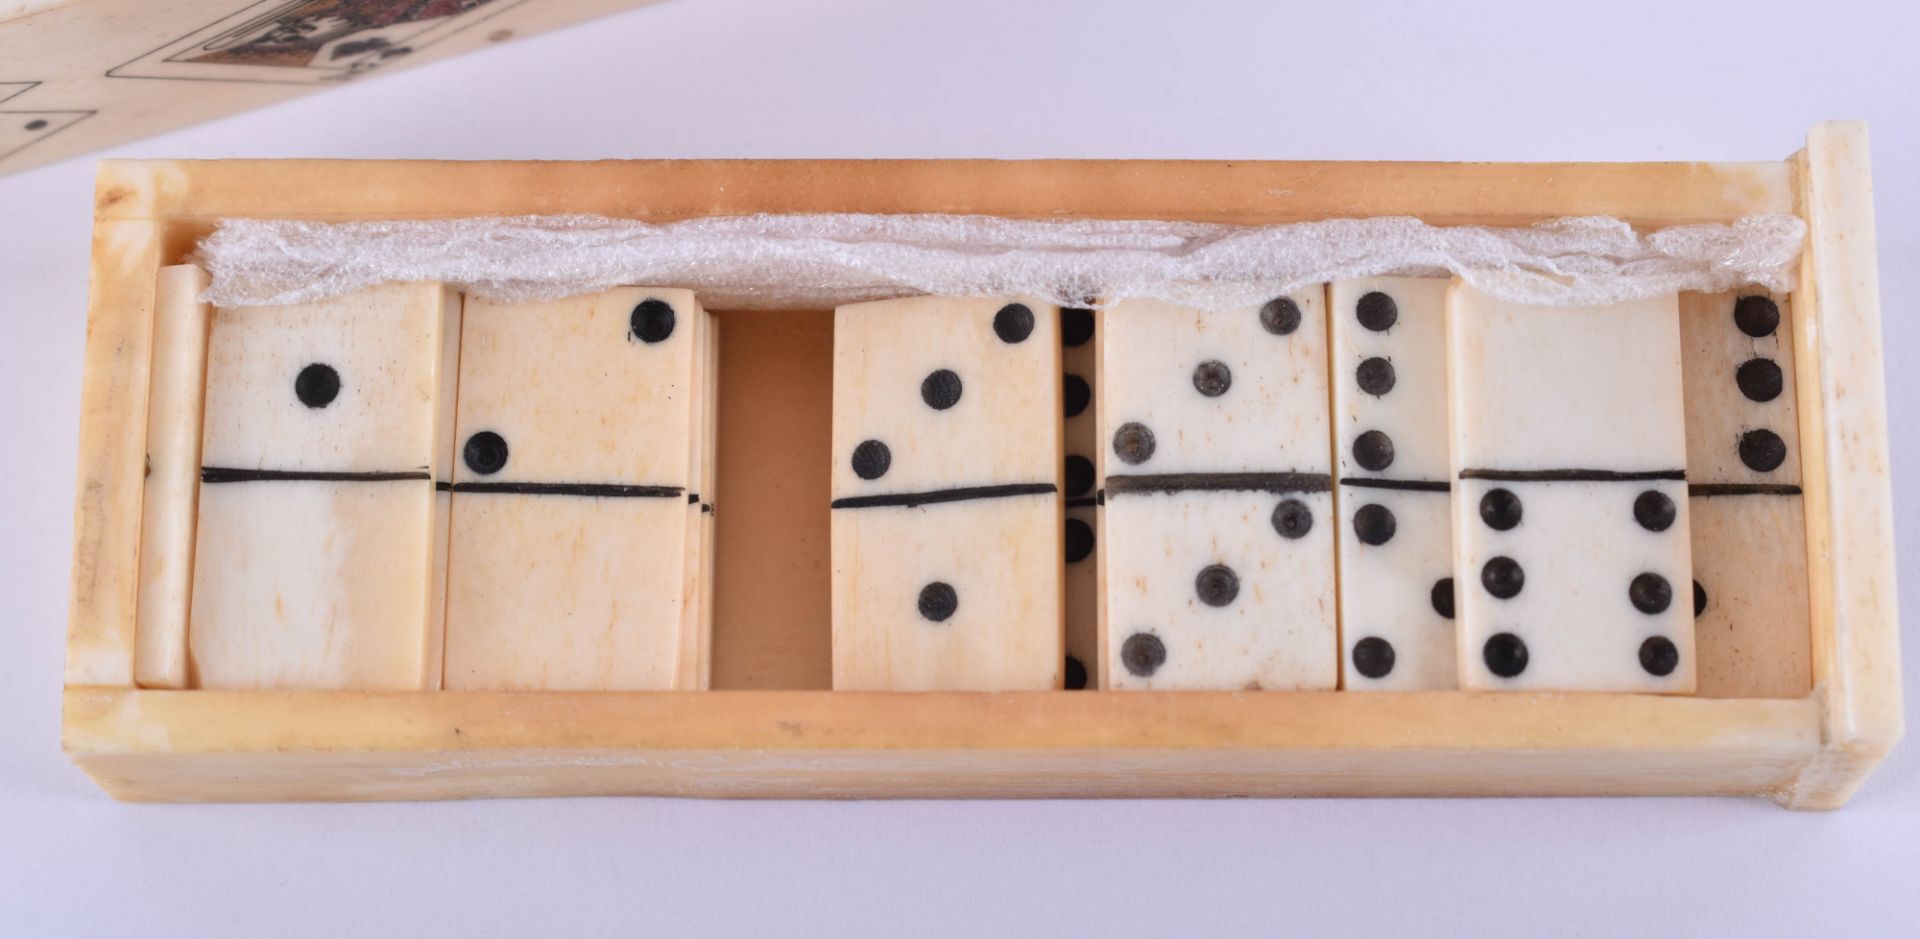  Domino game around 1900 - Image 2 of 6